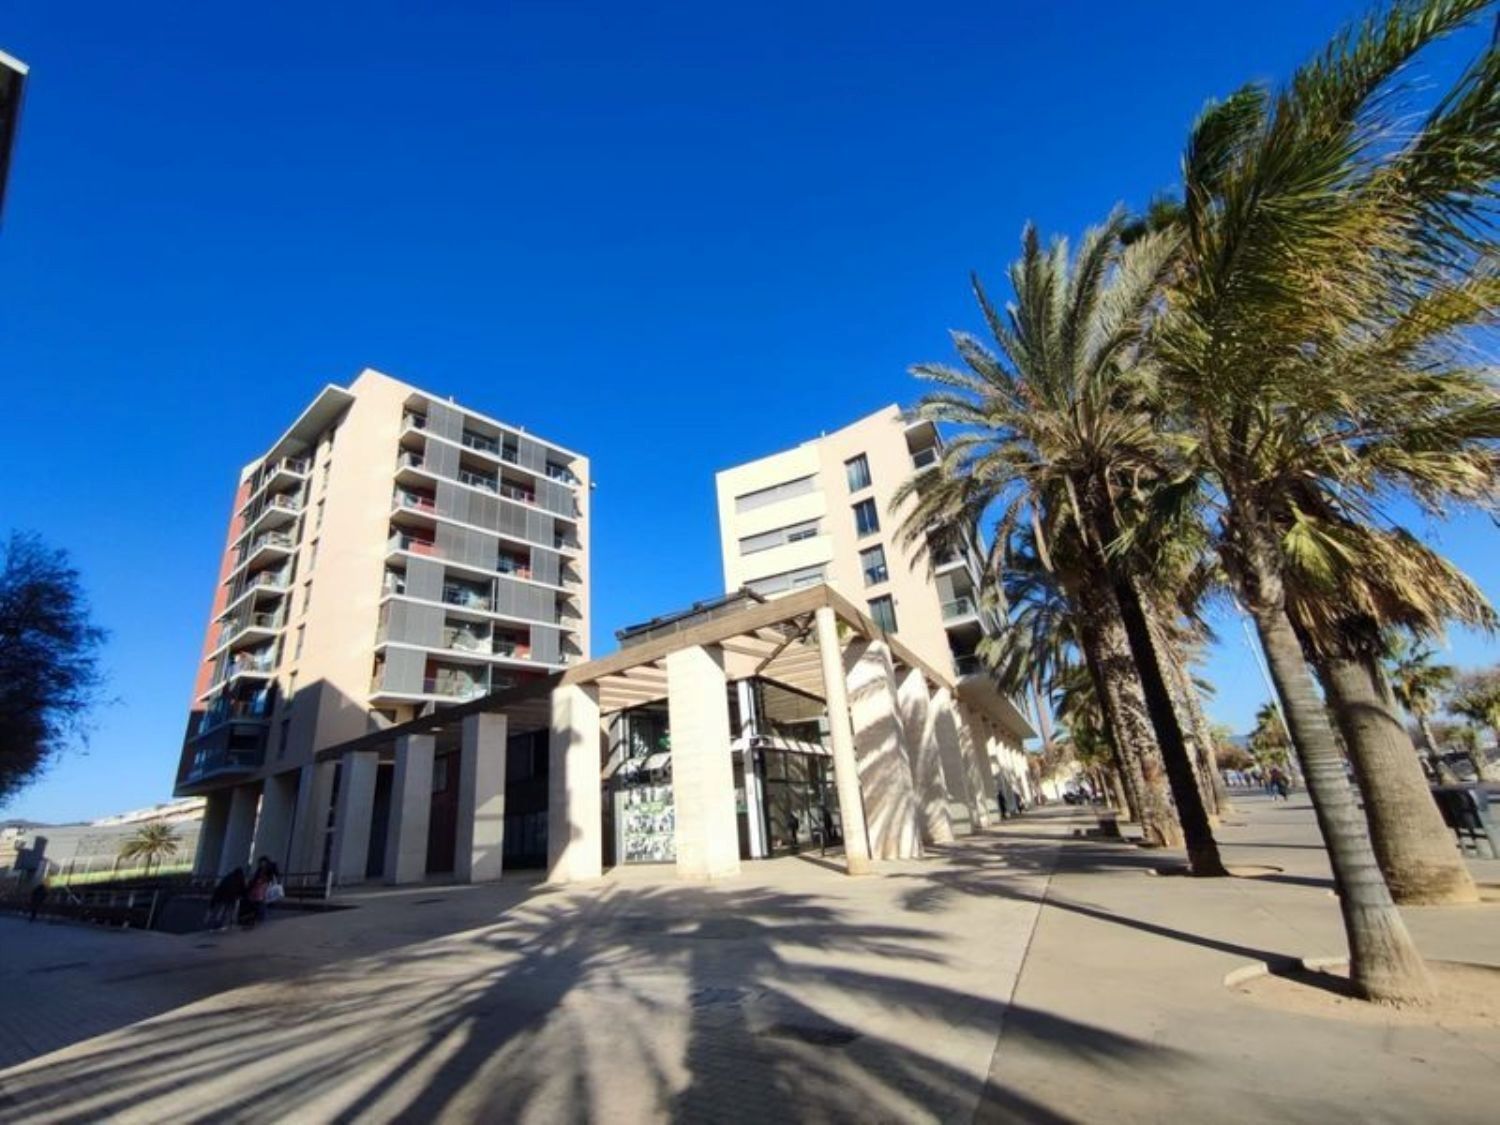 Vende-se apartamento à beira-mar no Paseo Maritimo, em Badalona